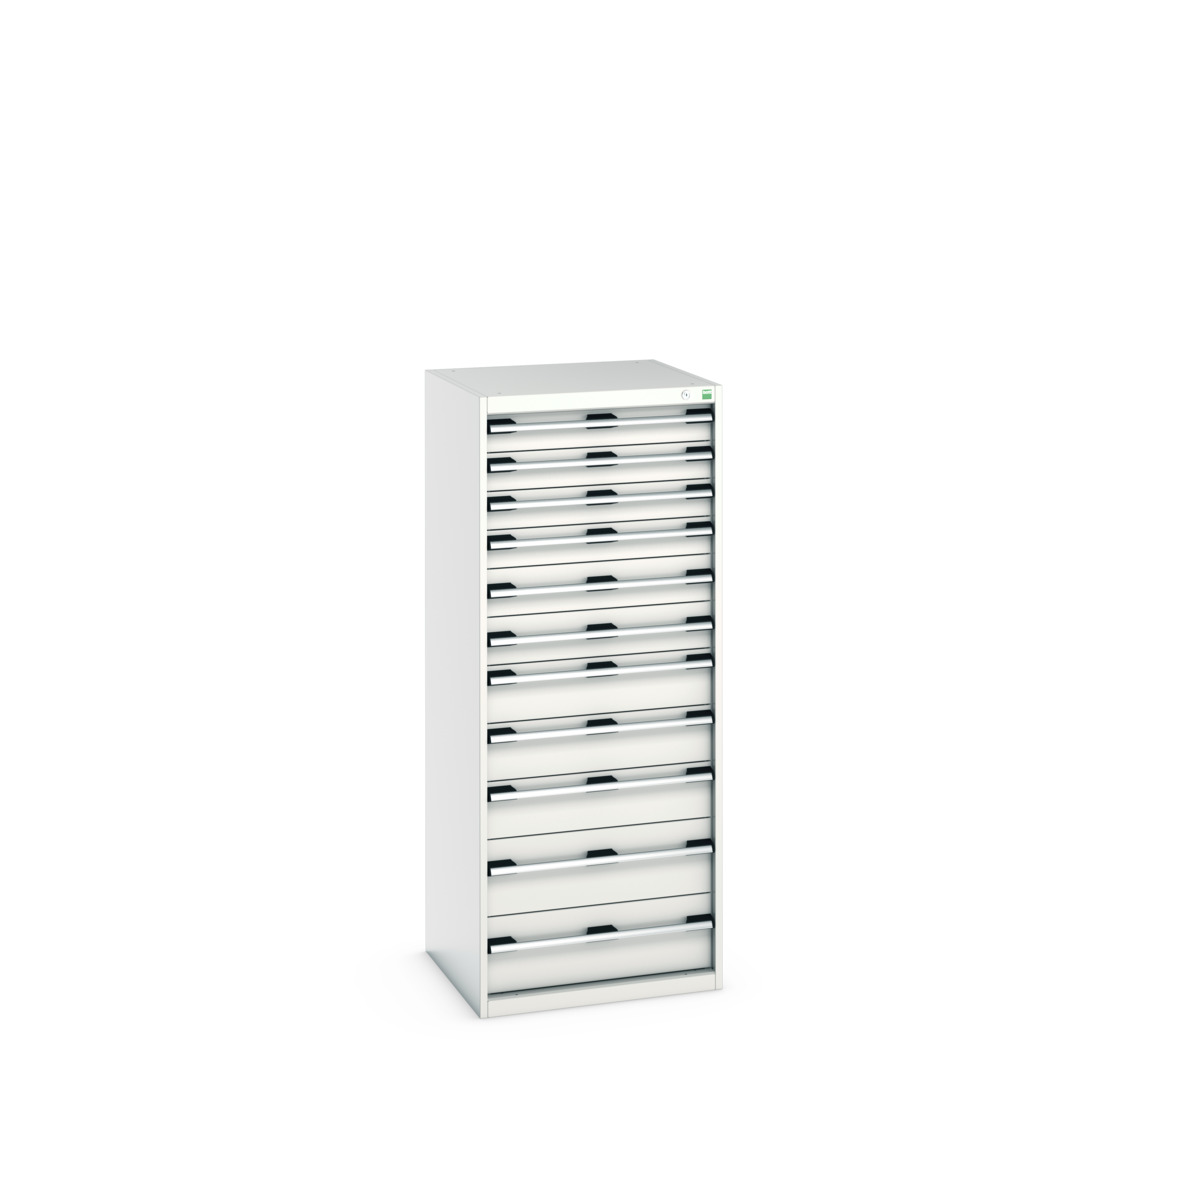 40019156.16V - cubio drawer cabinet